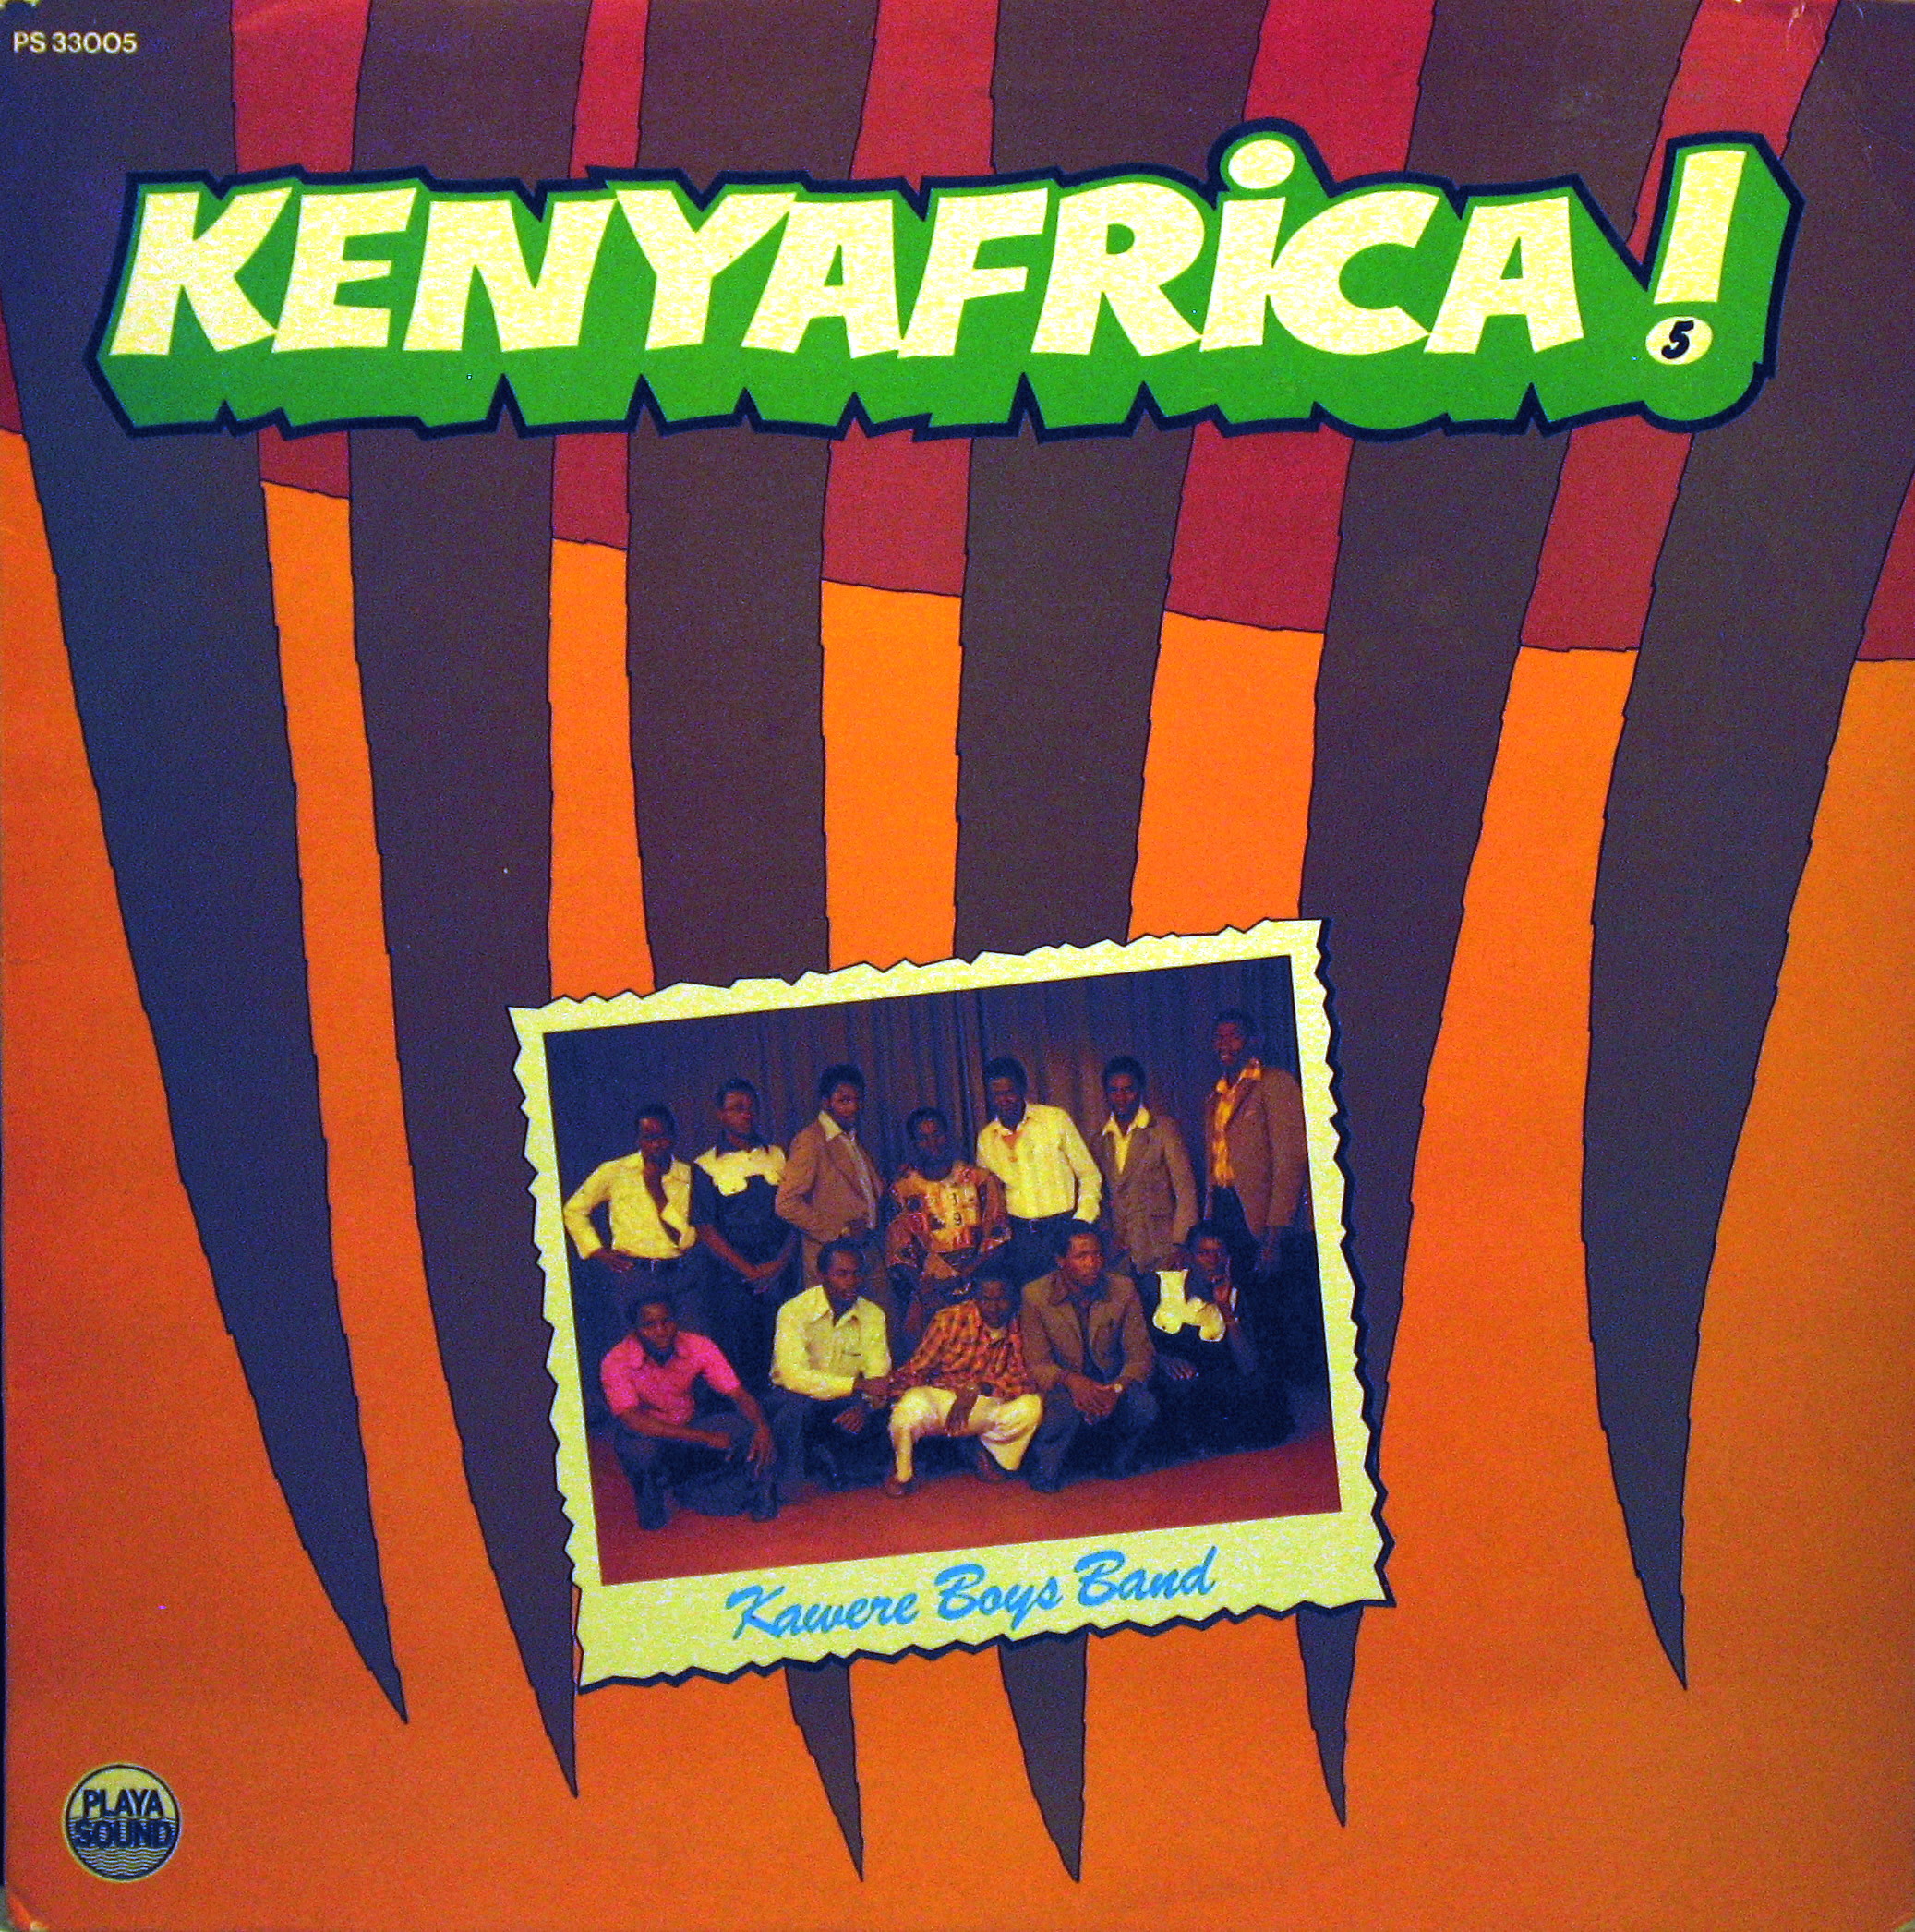 Kawere Boys Band – Kenyafrica ! vol.5,Playa Sound 1976 Kenyafrica-vol.5-front